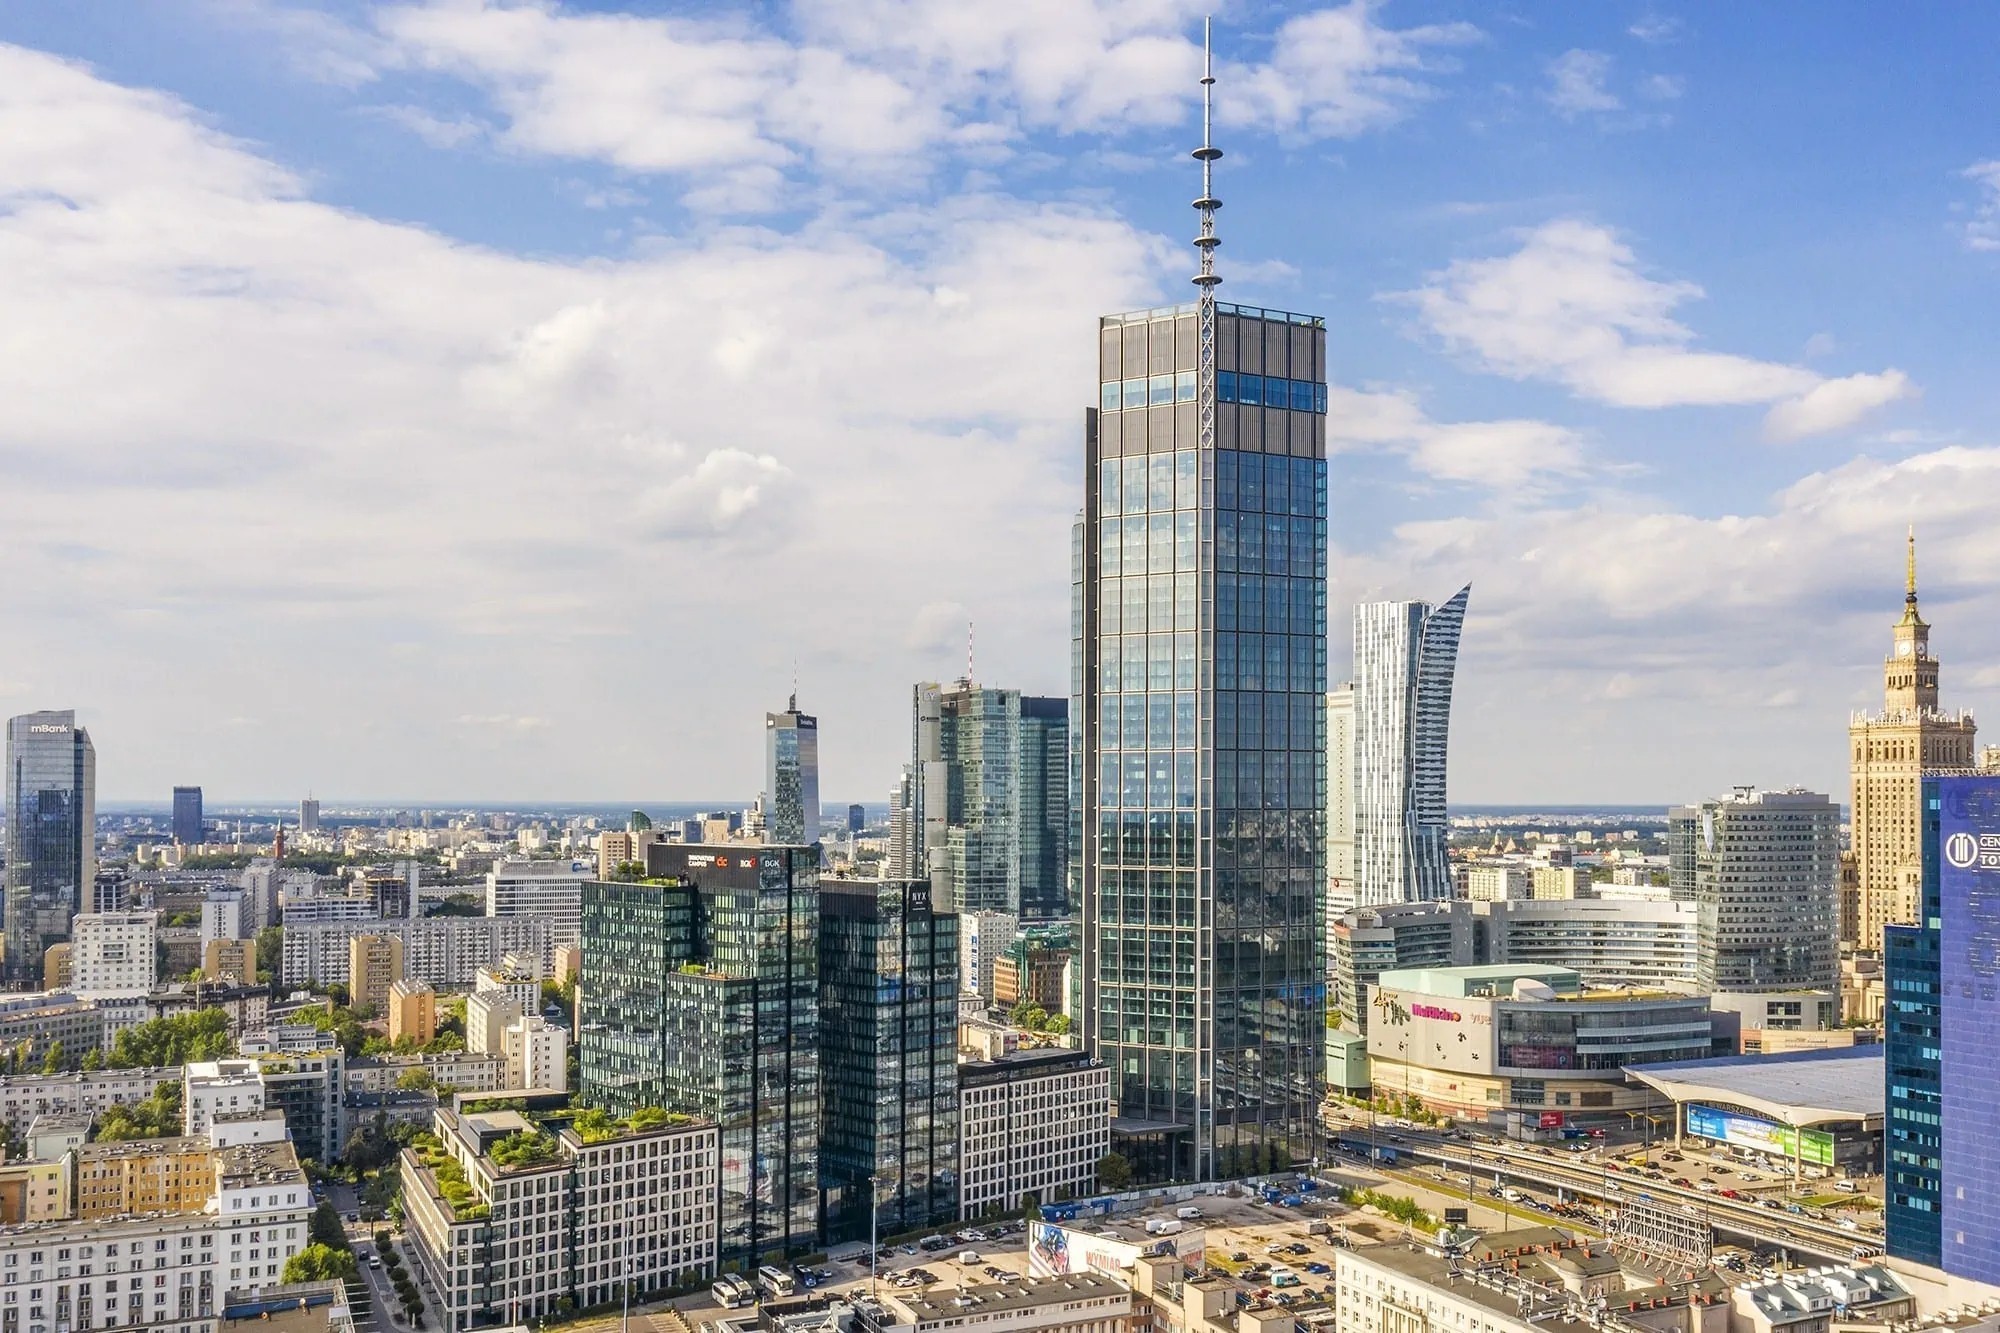 Avec son antenne, la tour Varso atteint une hauteur de 310 m, ce qui en fait la plus haute tour d’Europe.